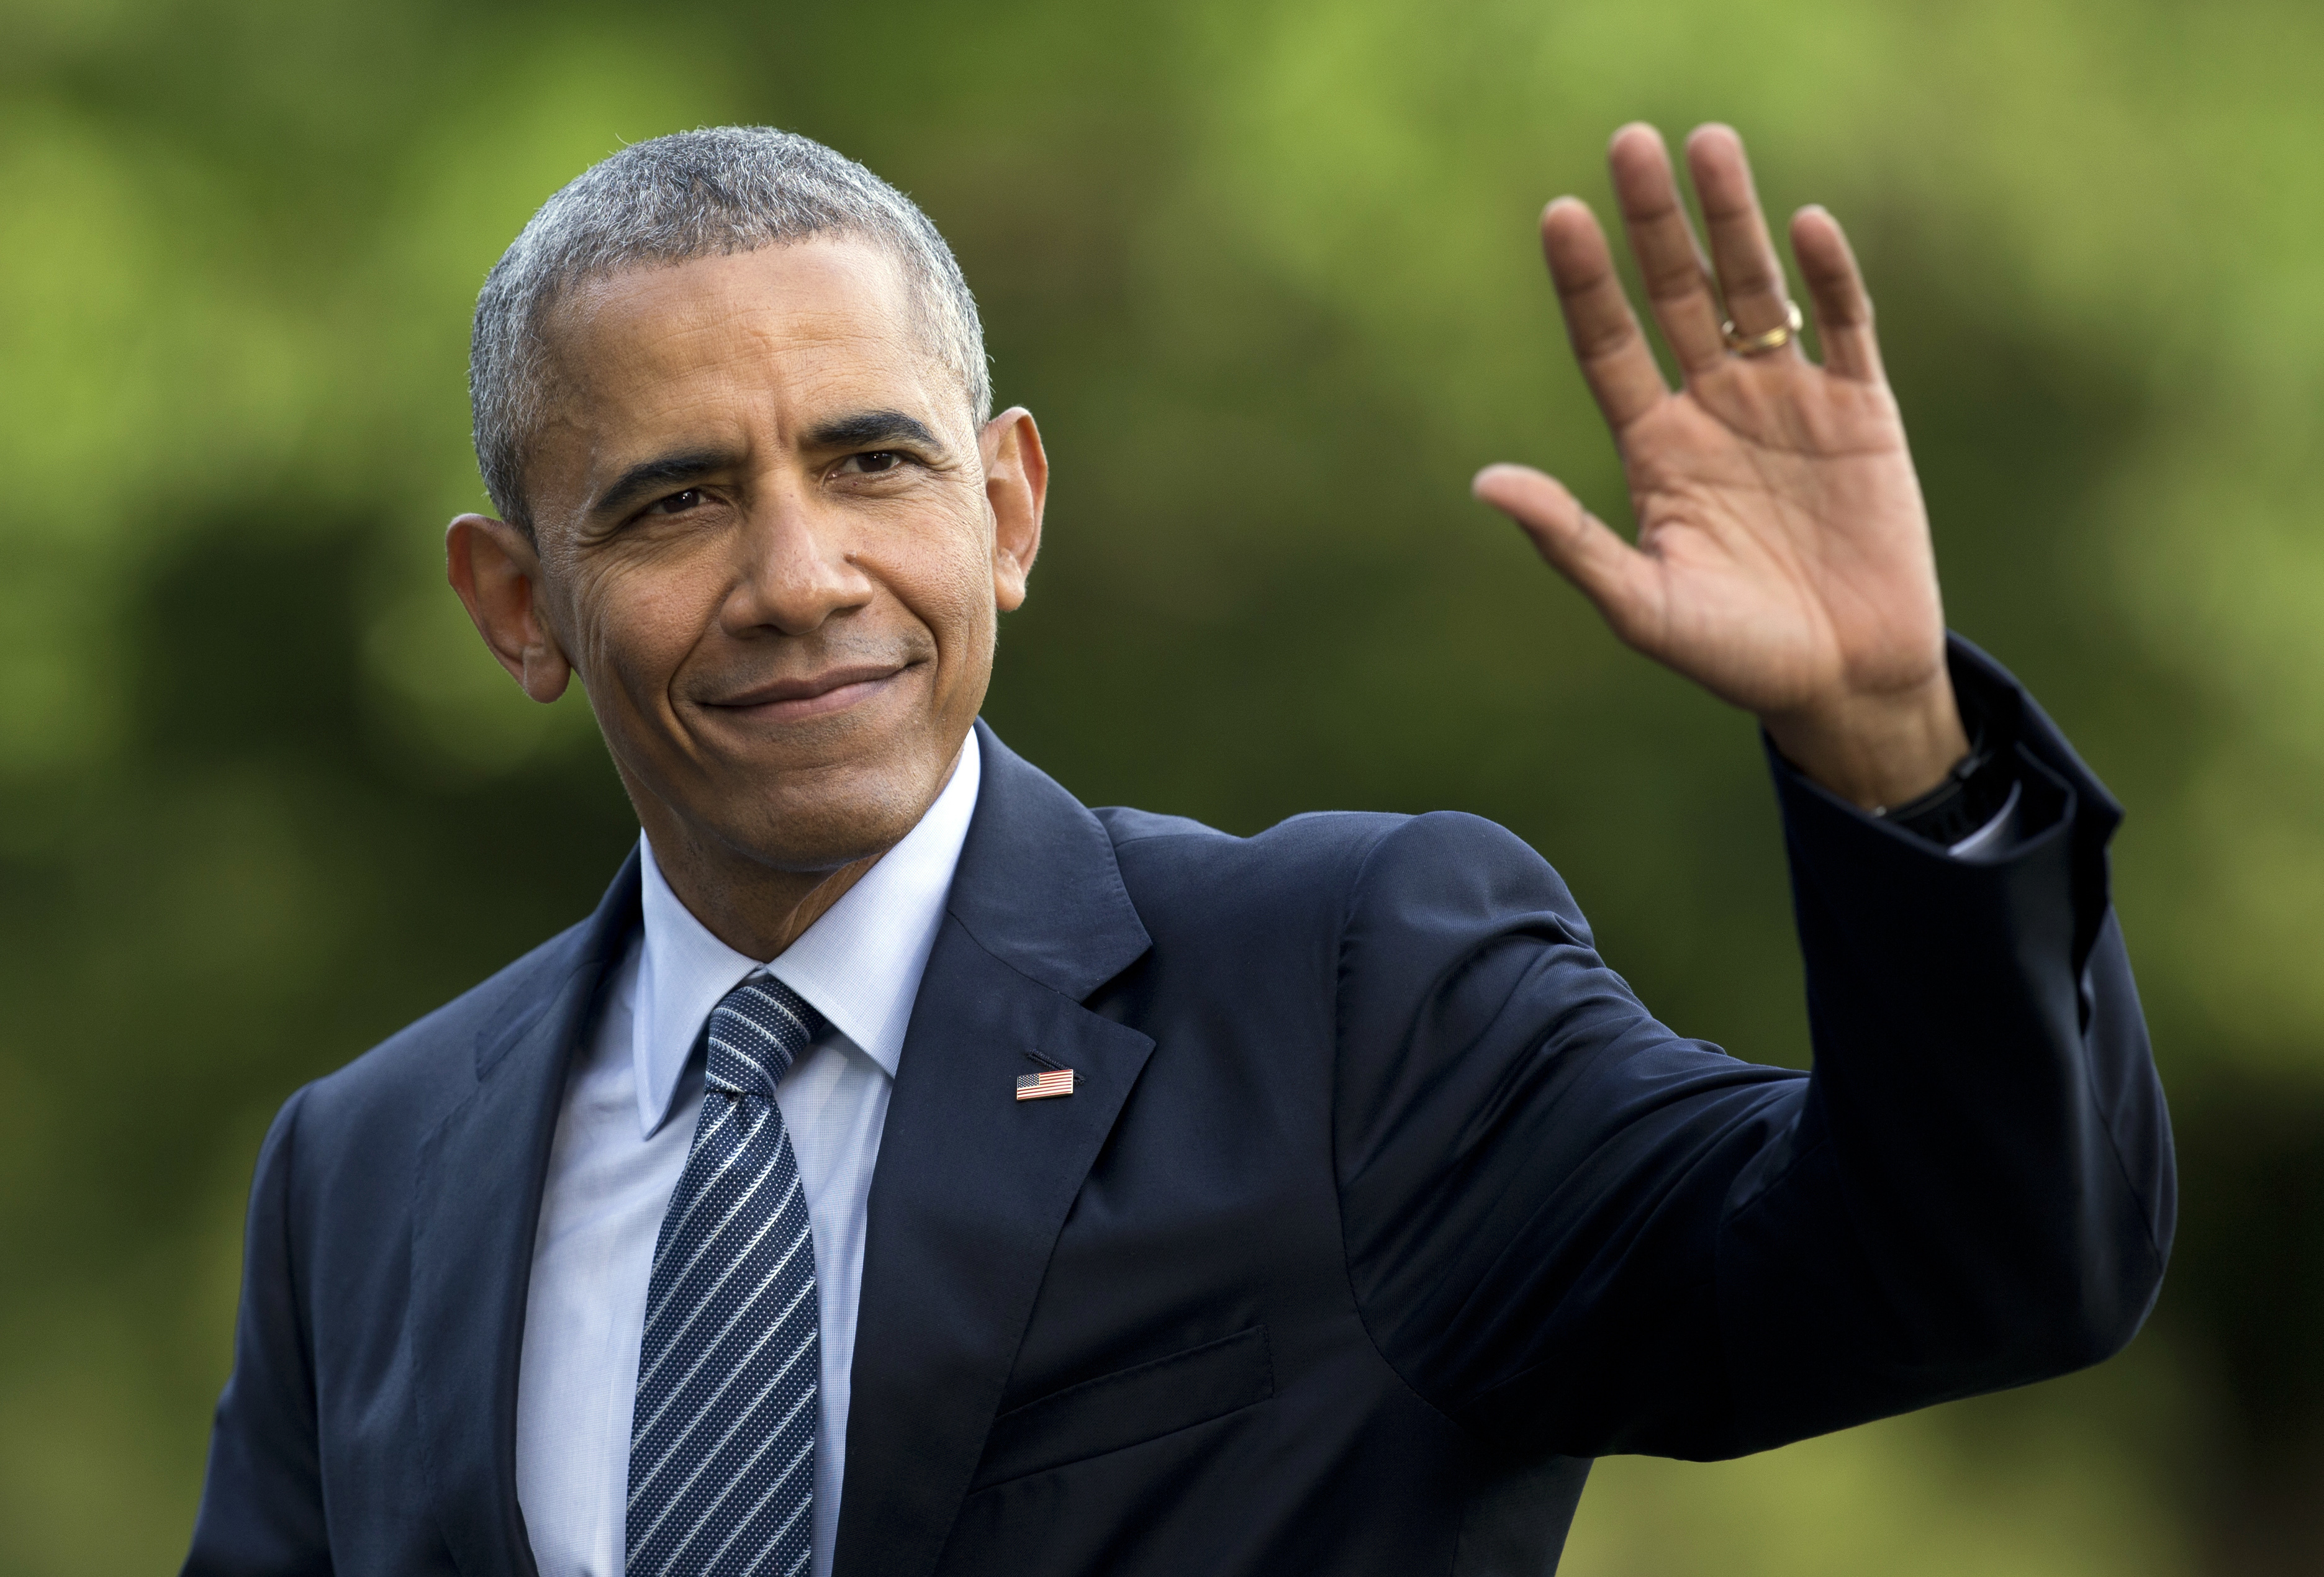 Obama elimina algunas sanciones contra Sudán por sus acciones "positivas"